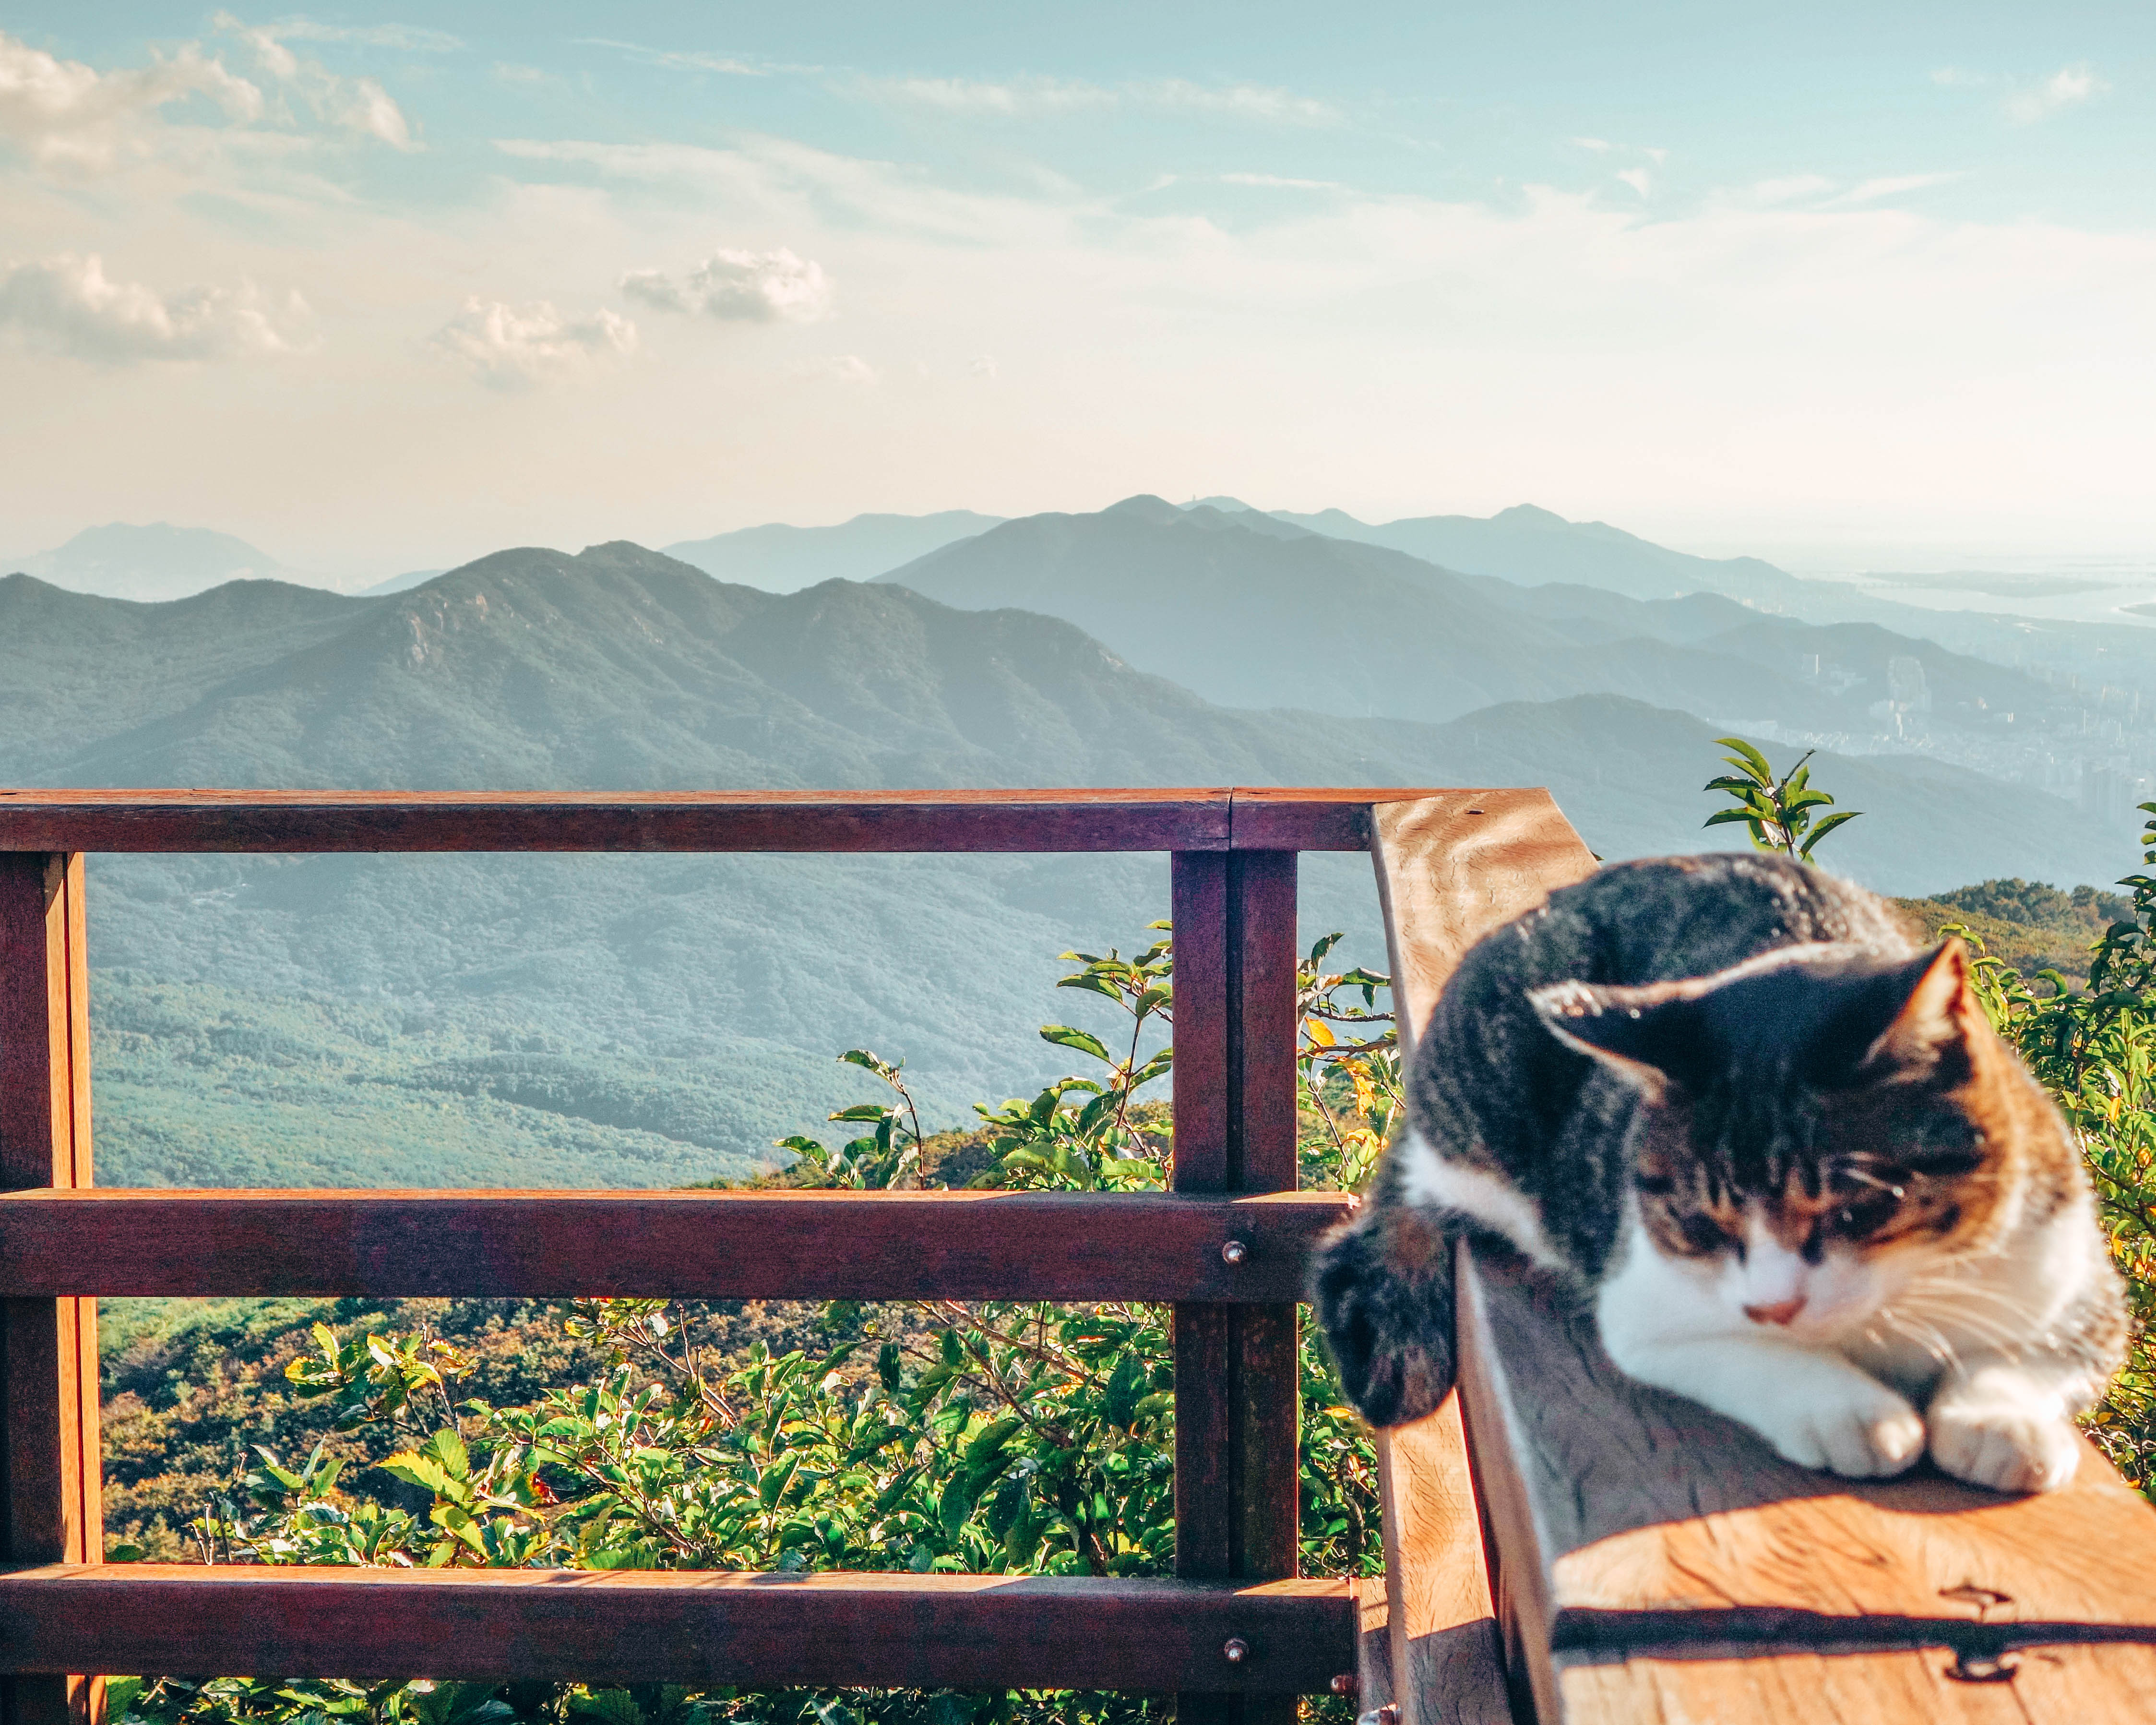 The cats of Mount Geumjeongsan, Busan, South Korea - WeDidItOurWay.com